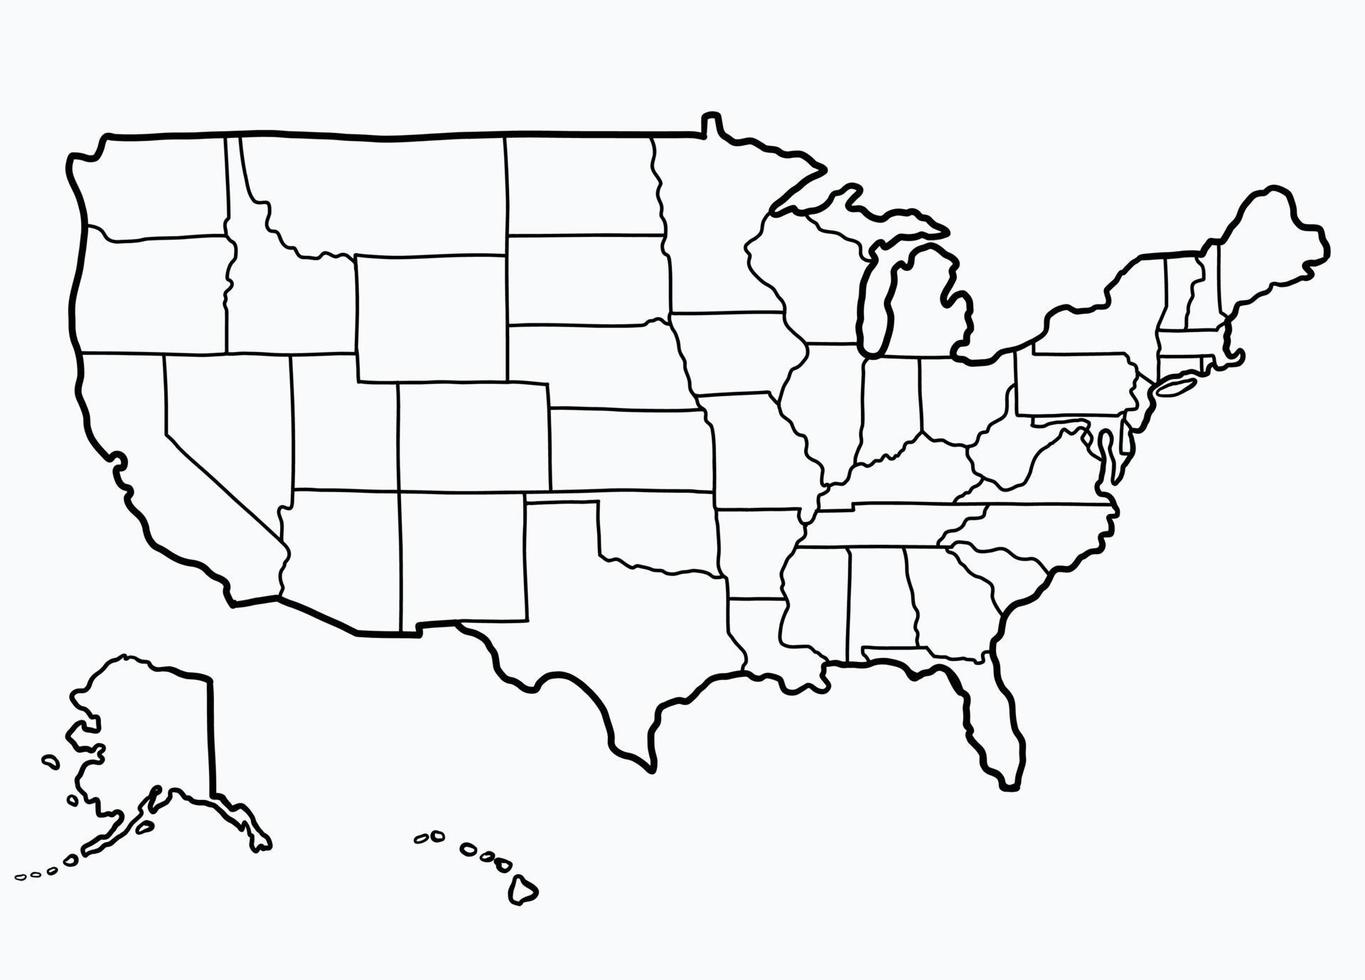 doodle dessin à main levée de la carte des états-unis d'amérique. v vecteur